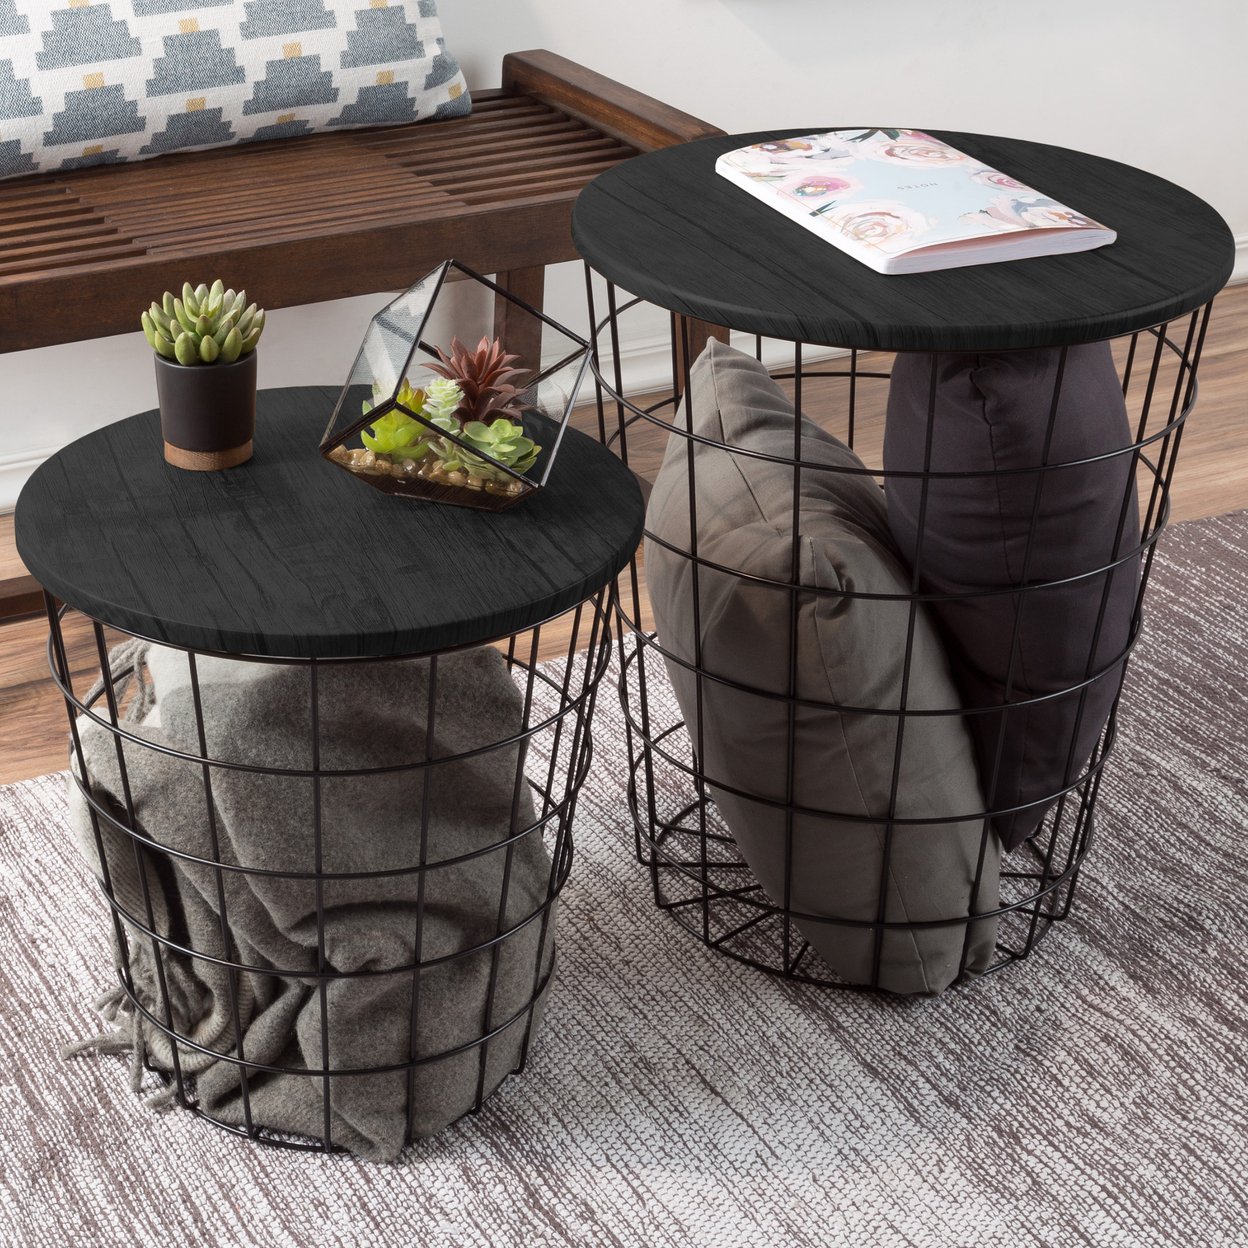 Nesting End Tables Metal Basket MDF Black Top Storage Furniture Accent Decor